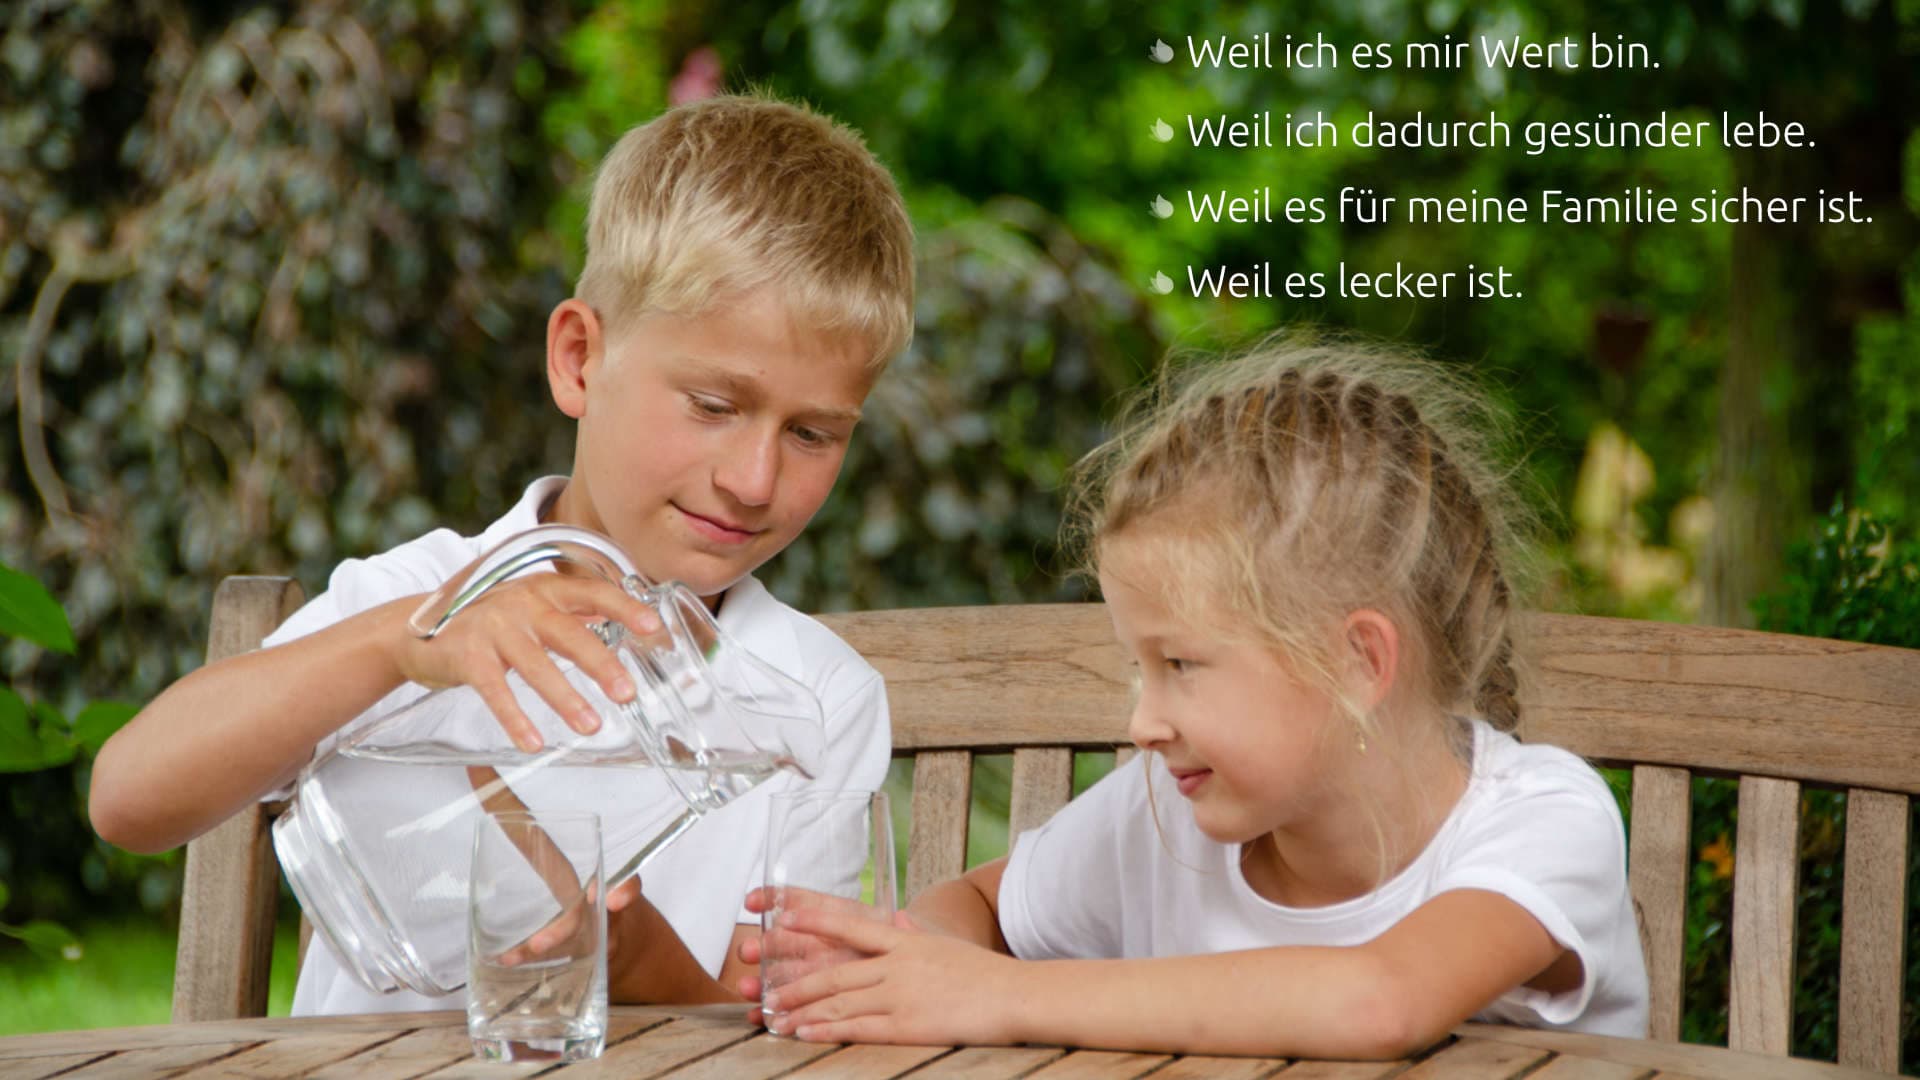 Junge gießt einem Mädchen ein Glas sauberes Wasser im Garten ein